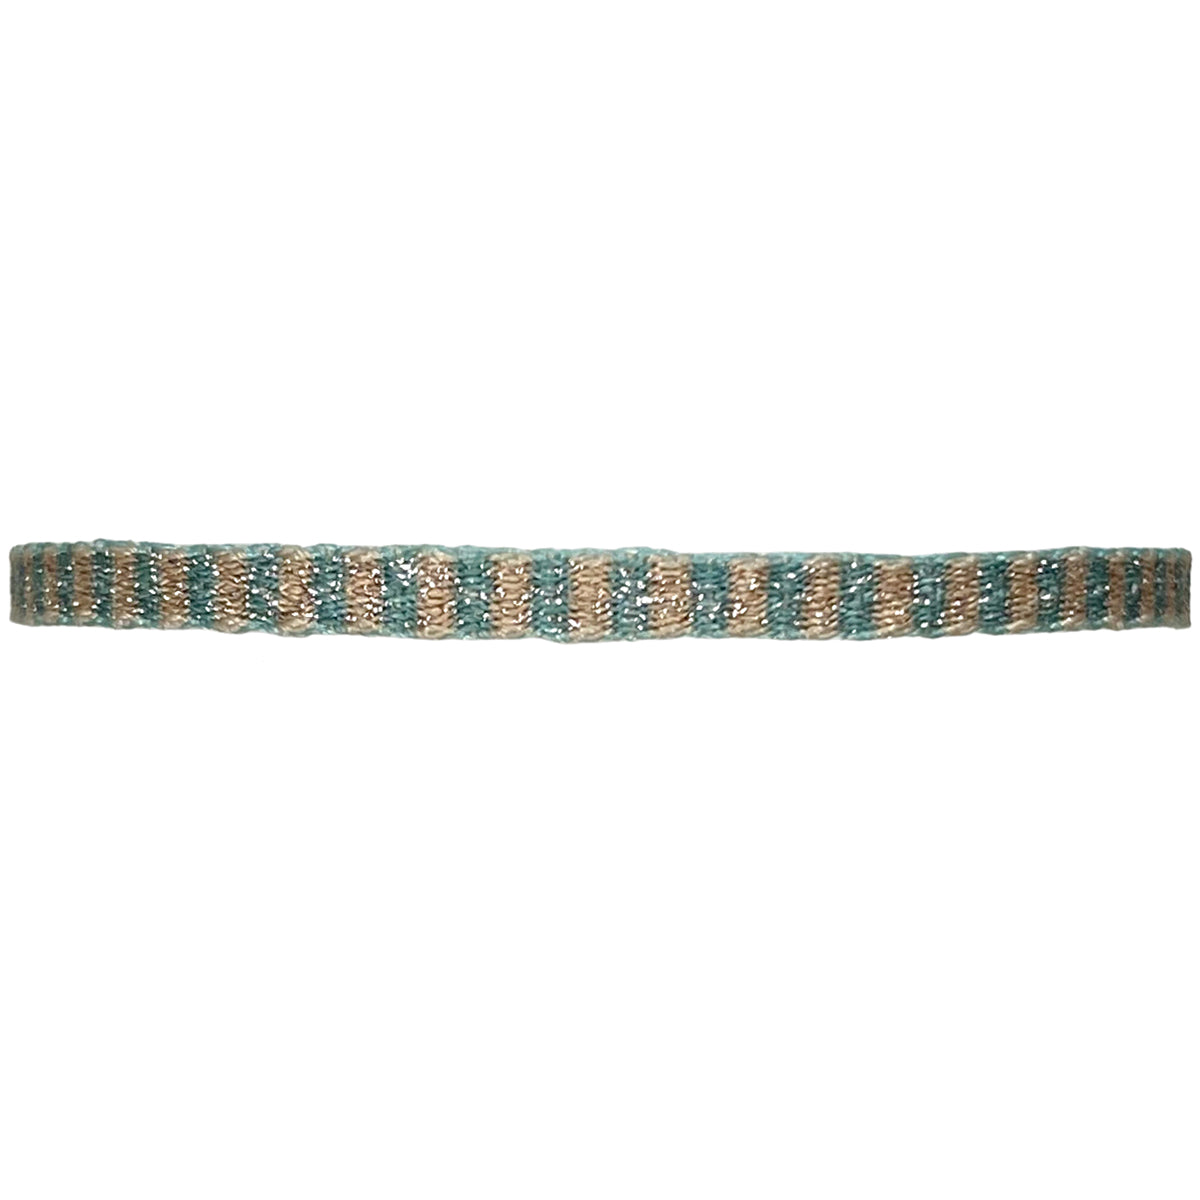 Basic Handmade Bracelet in Green and Gold Tones